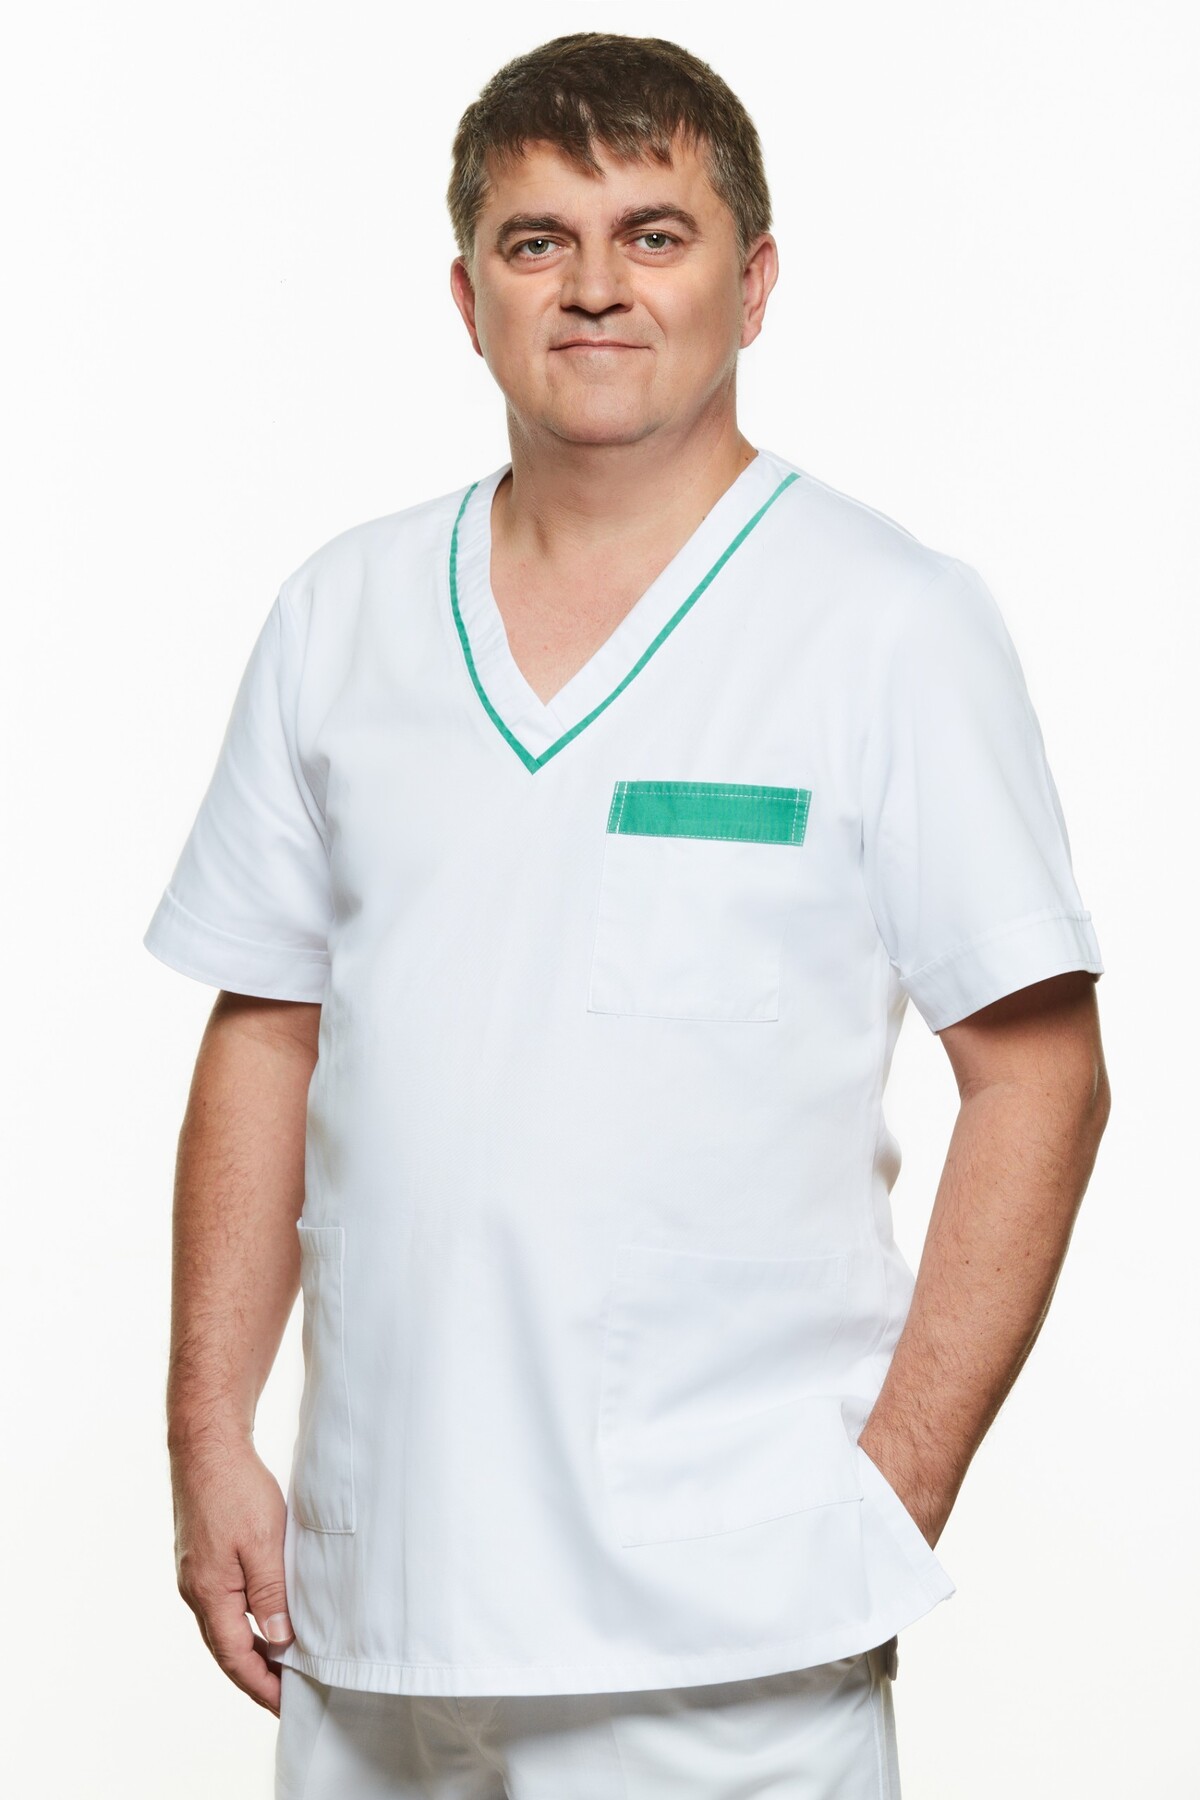 Štefan Zamba je skúsený primár infektologického oddelenia. Pod jeho vedením zvládli v Michalovciach tri najväčšie epidémie na Slovensku za posledných osem rokov: mumpsu, žltačky a osýpok. Teraz bojuje s koronavírusom, ale aj s hoaxami.